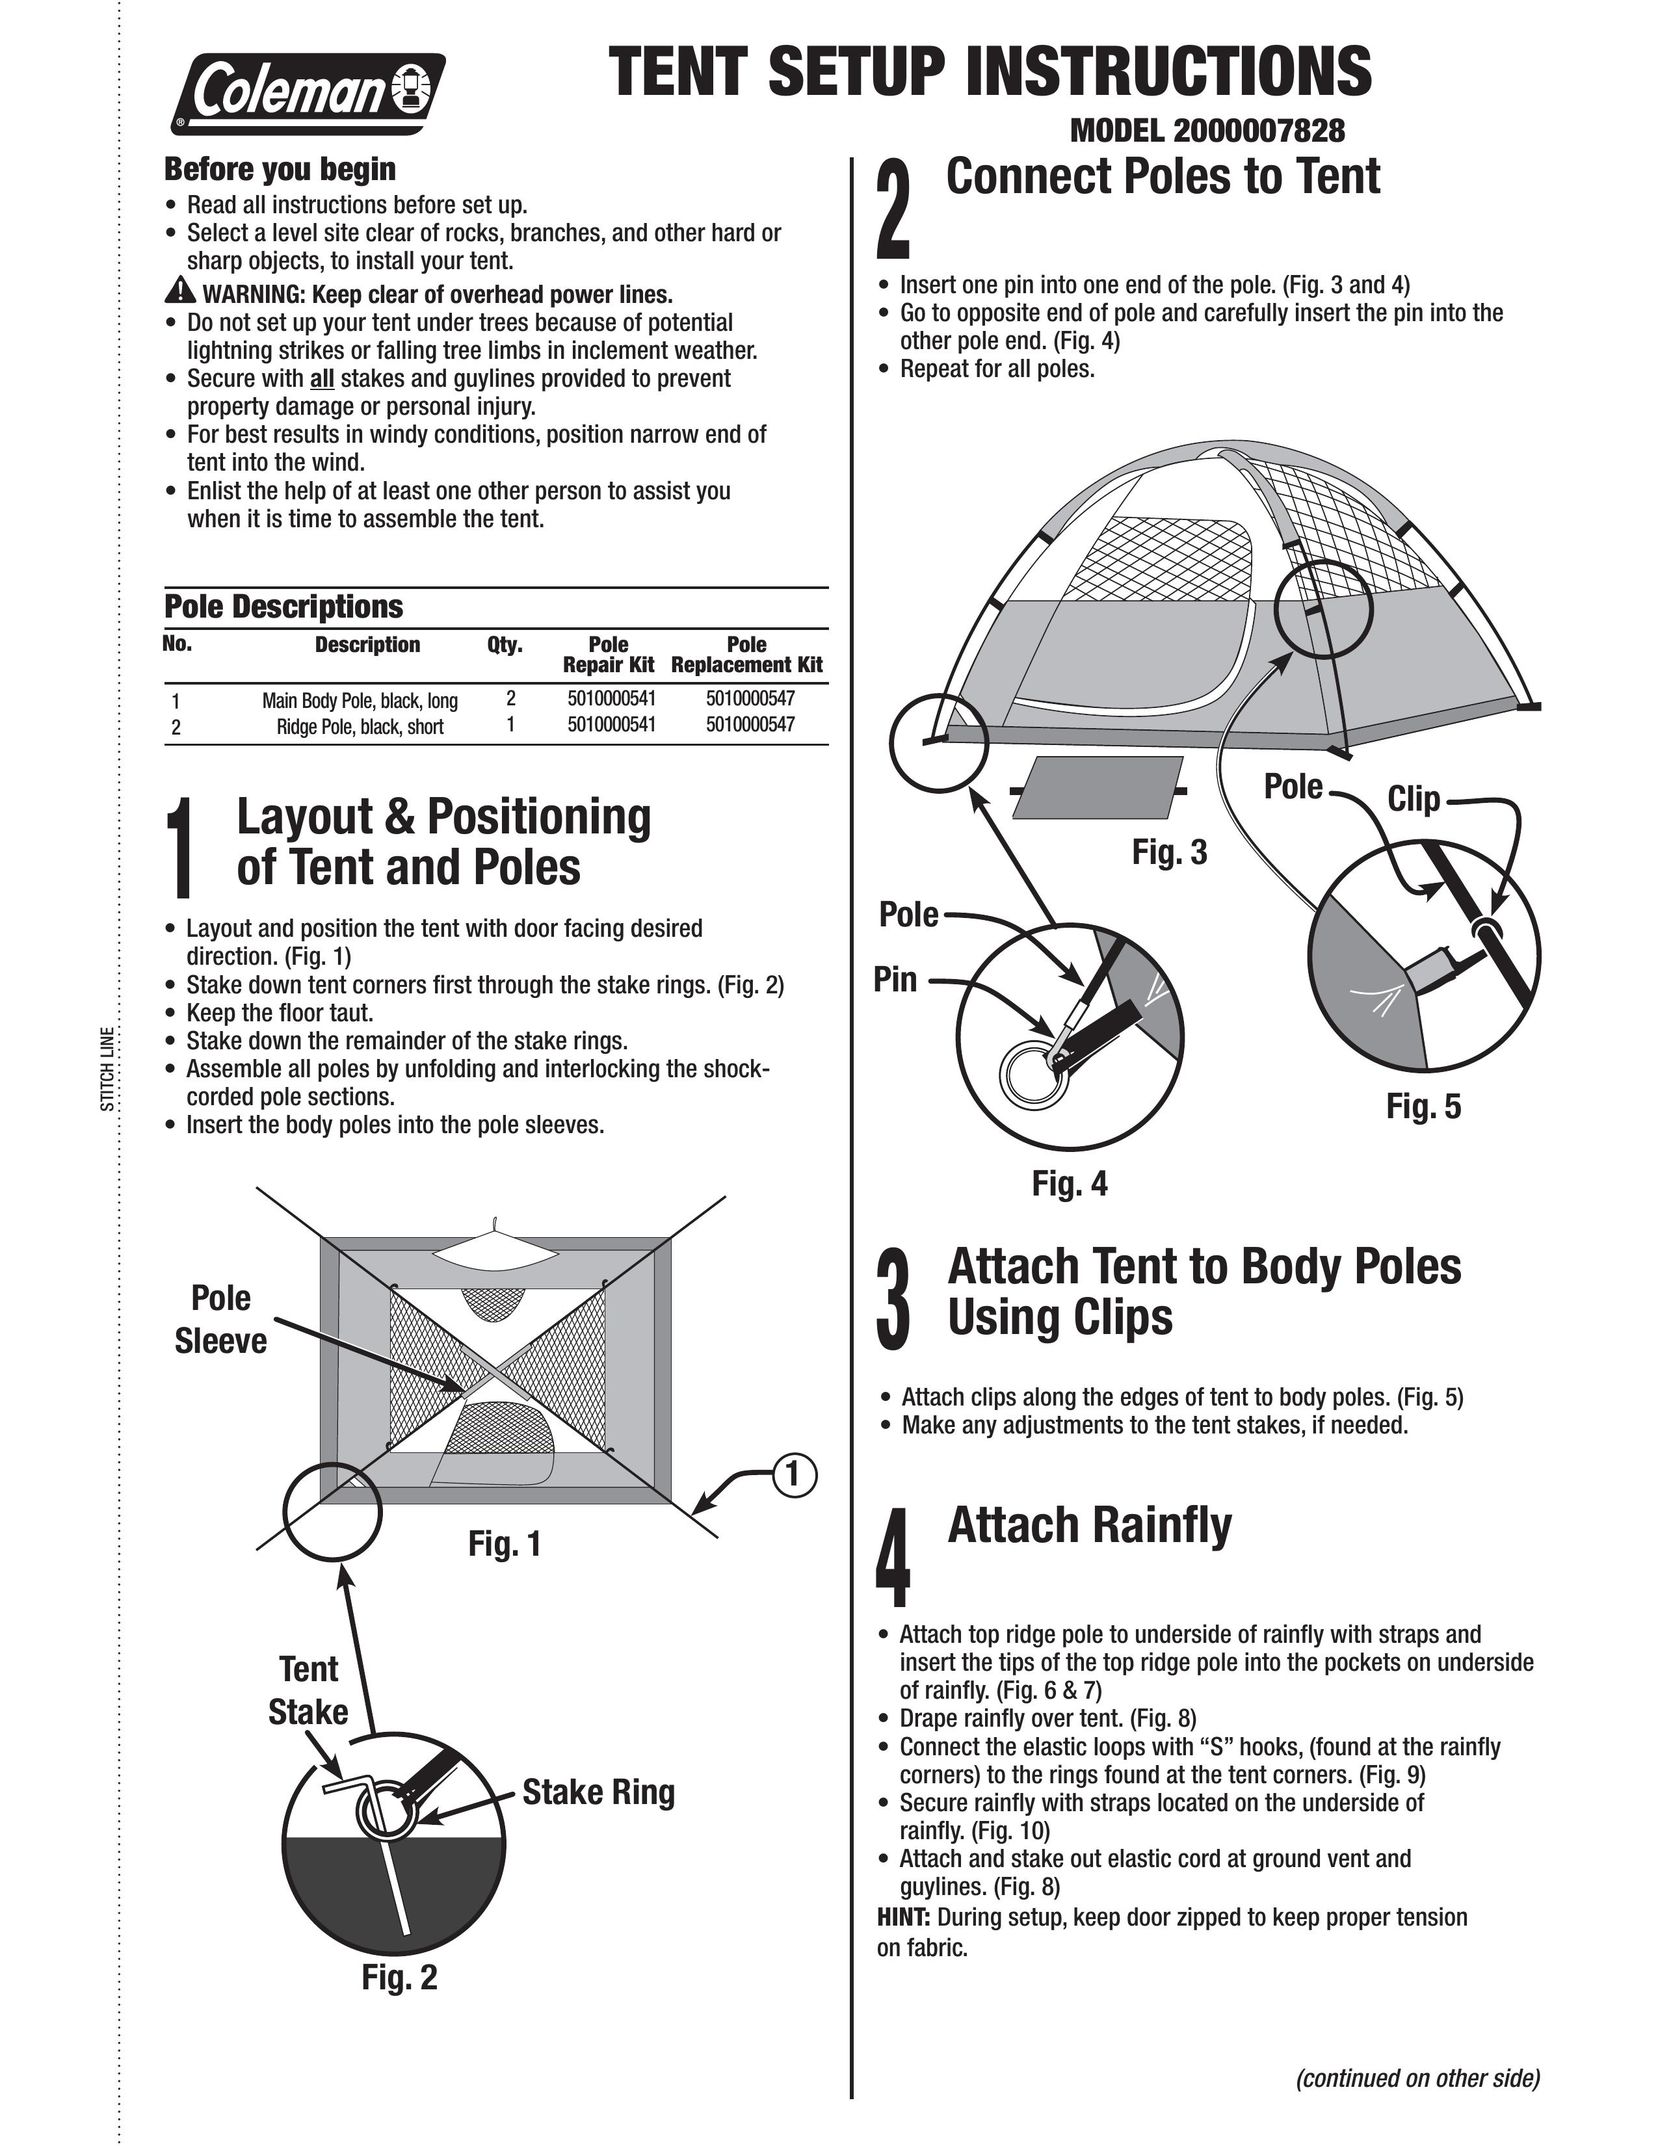 Coleman 2000007828 Tent User Manual